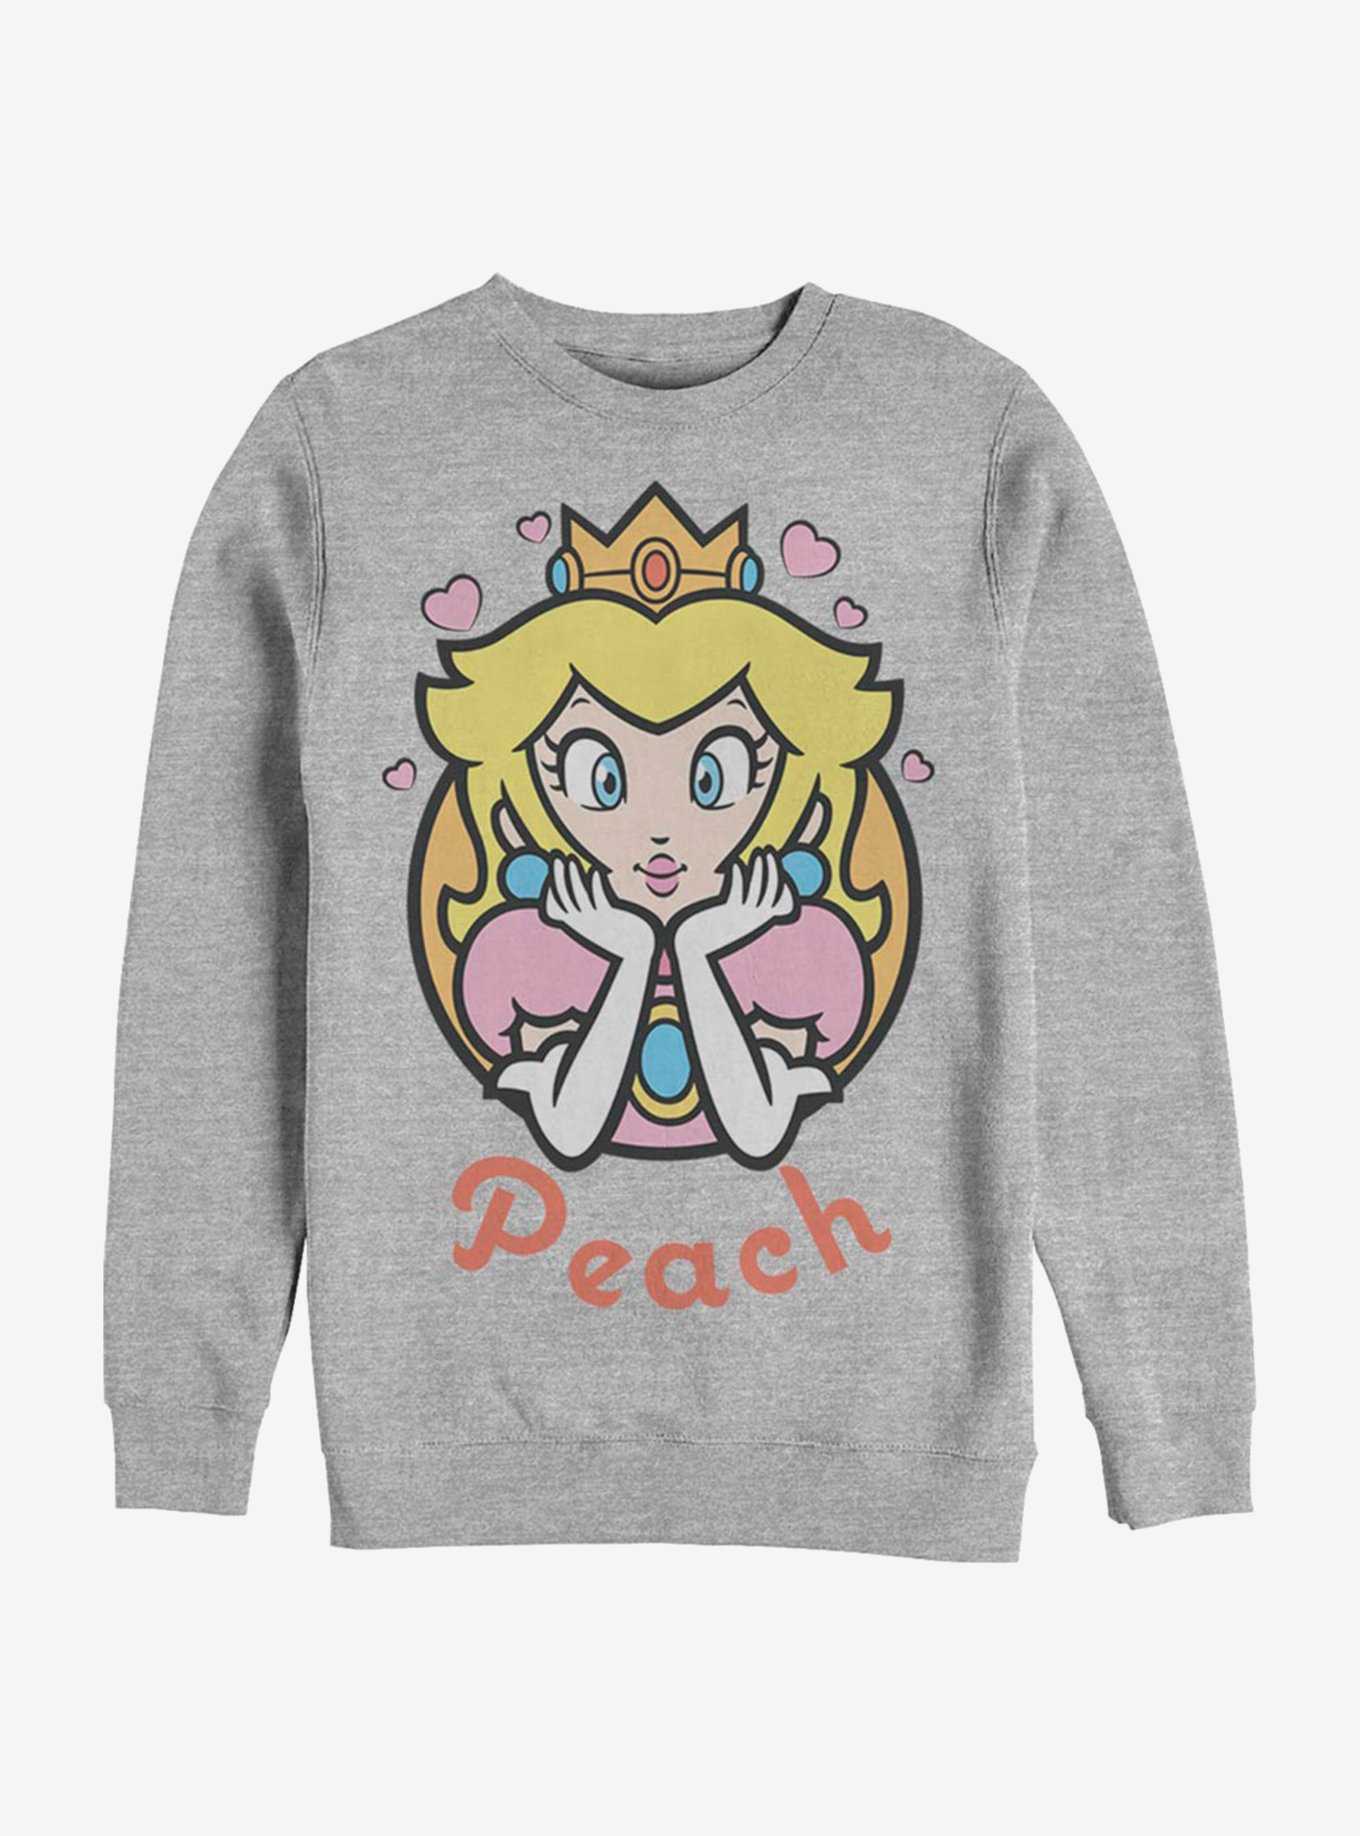 Super Mario Peach Hearts Crew Sweatshirt, , hi-res